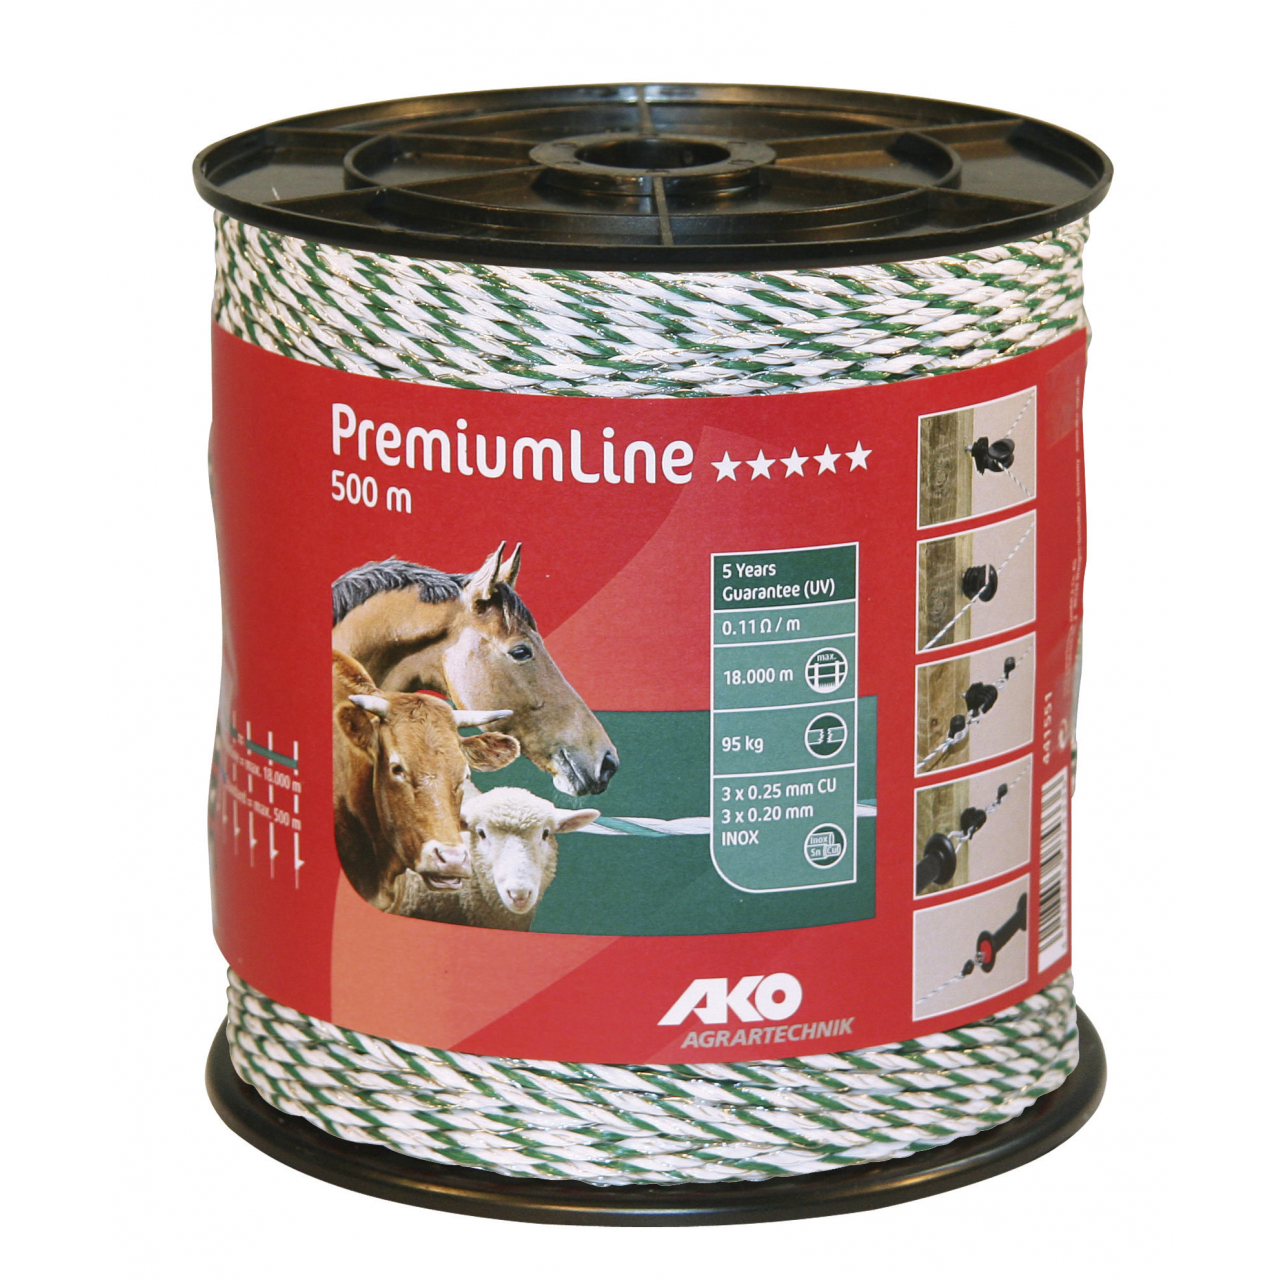 AKO PremiumLine villanypásztor vezeték - zöld/fehér, 500 m, 0,11 ohm/m, 95 kg